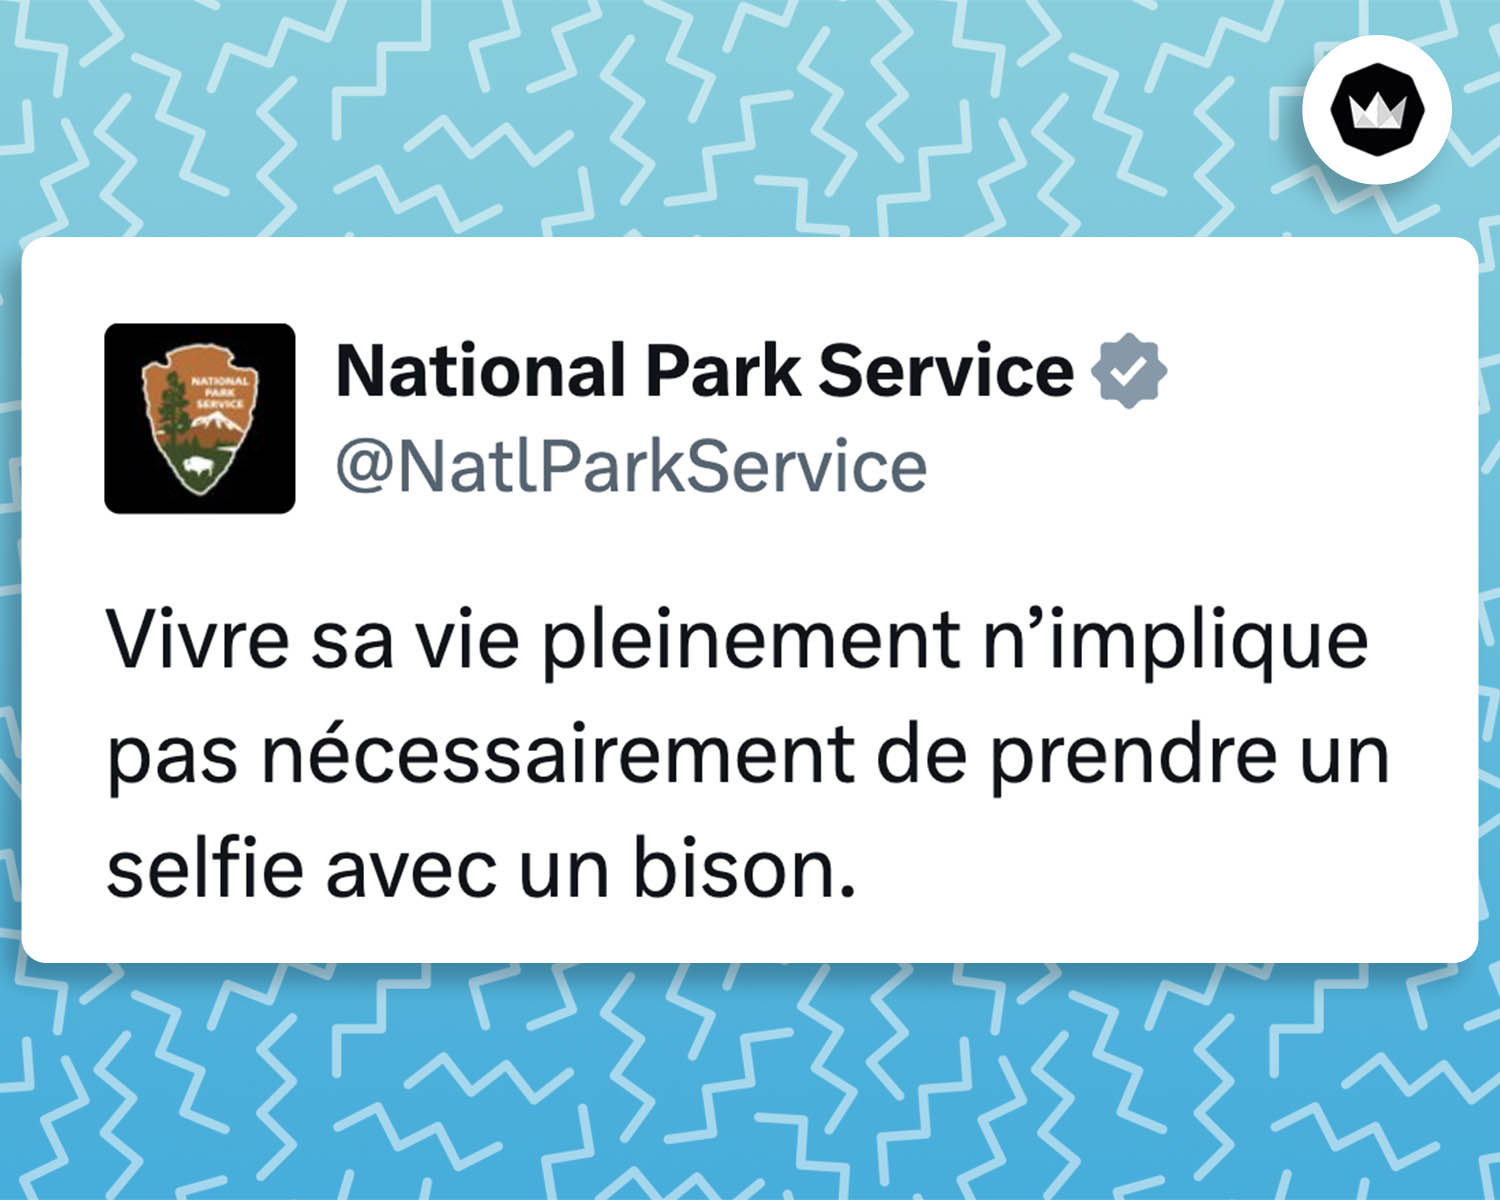 Tweet de NatlParkServices : 

Vivre sa vie pleinement n’implique pas nécessairement de prendre un selfie avec un bison.